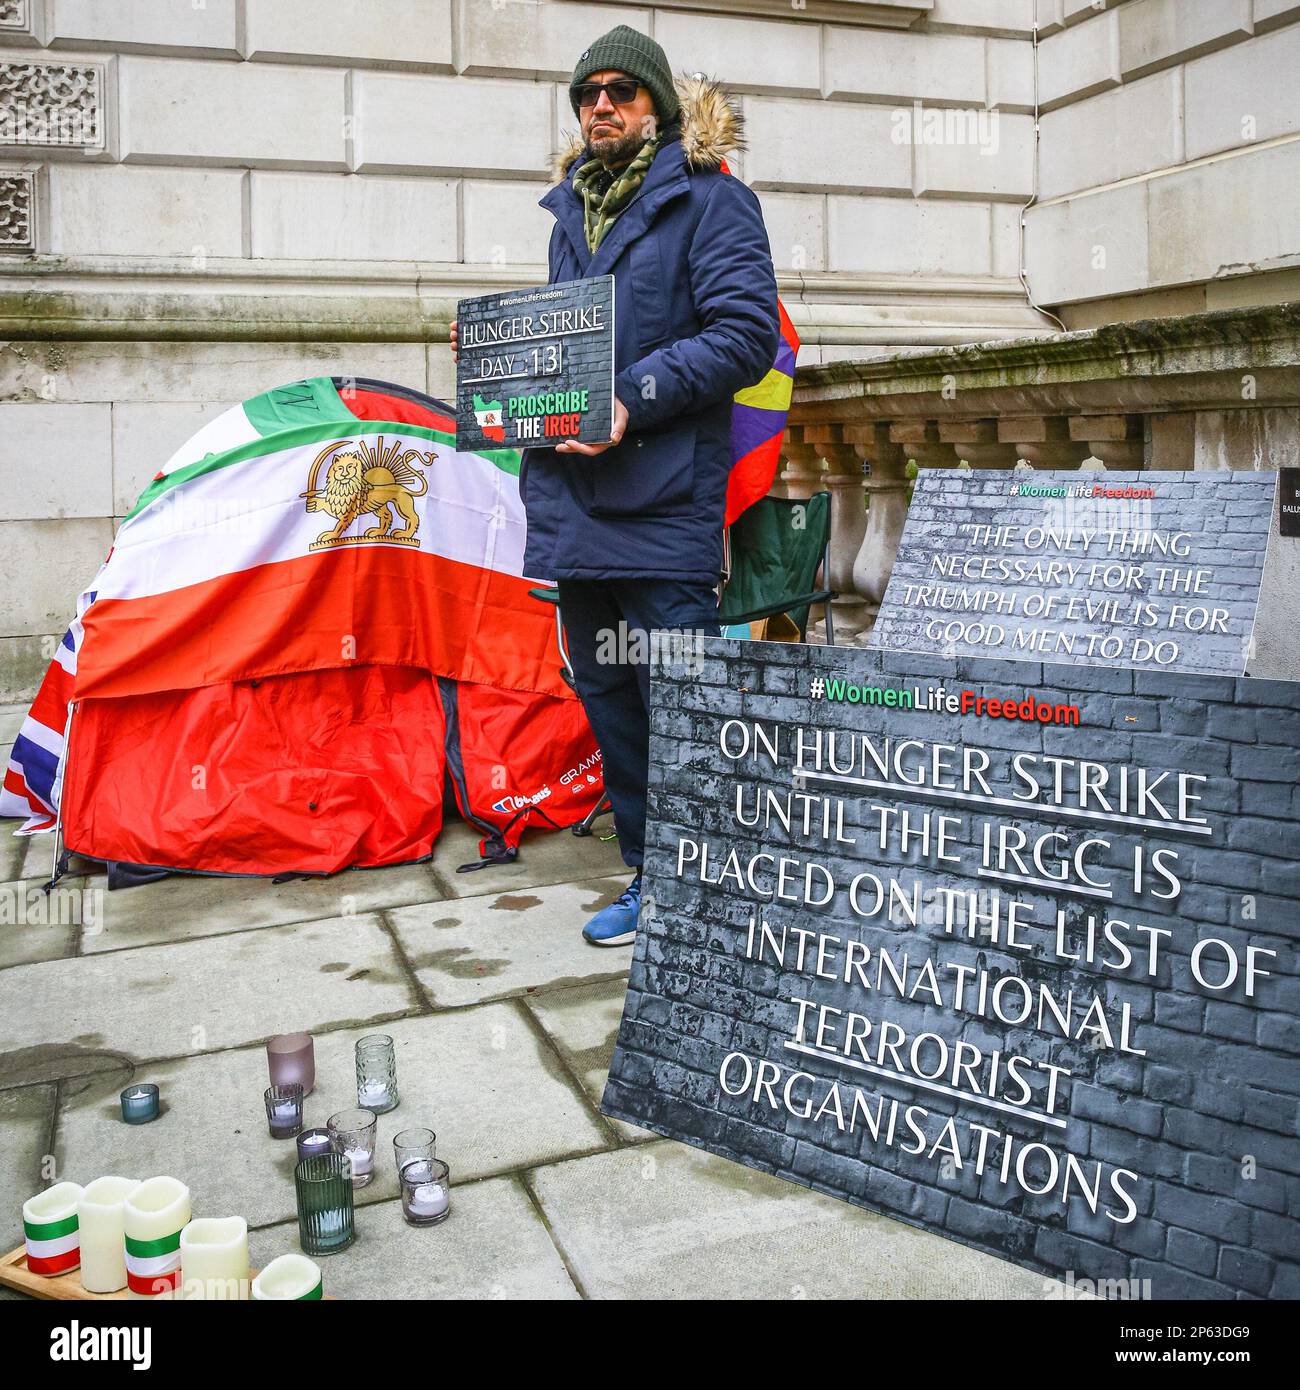 Londra, Regno Unito. 07th Mar, 2023. Vahid Beheshti, che dichiara di essere un giornalista, è visto il giorno 13 del suo sciopero della fame al di fuori dell'Ufficio degli Esteri britannico a Westminster. Beheshti chiede che l'IRGC (corpo della Guardia rivoluzionaria Islamica) sia inserito nella lista delle organizzazioni terroristiche internazionali del Regno Unito. L'IRGC, un ramo dell'esercito iraniano, è considerato sempre più oppressivo e considerato un'organizzazione terroristica dagli Stati Uniti dal 2019, mentre l'UE ha recentemente approvato un emendamento che chiede agli stati membri di fare simili. Credit: Imageplotter/Alamy Live News Foto Stock